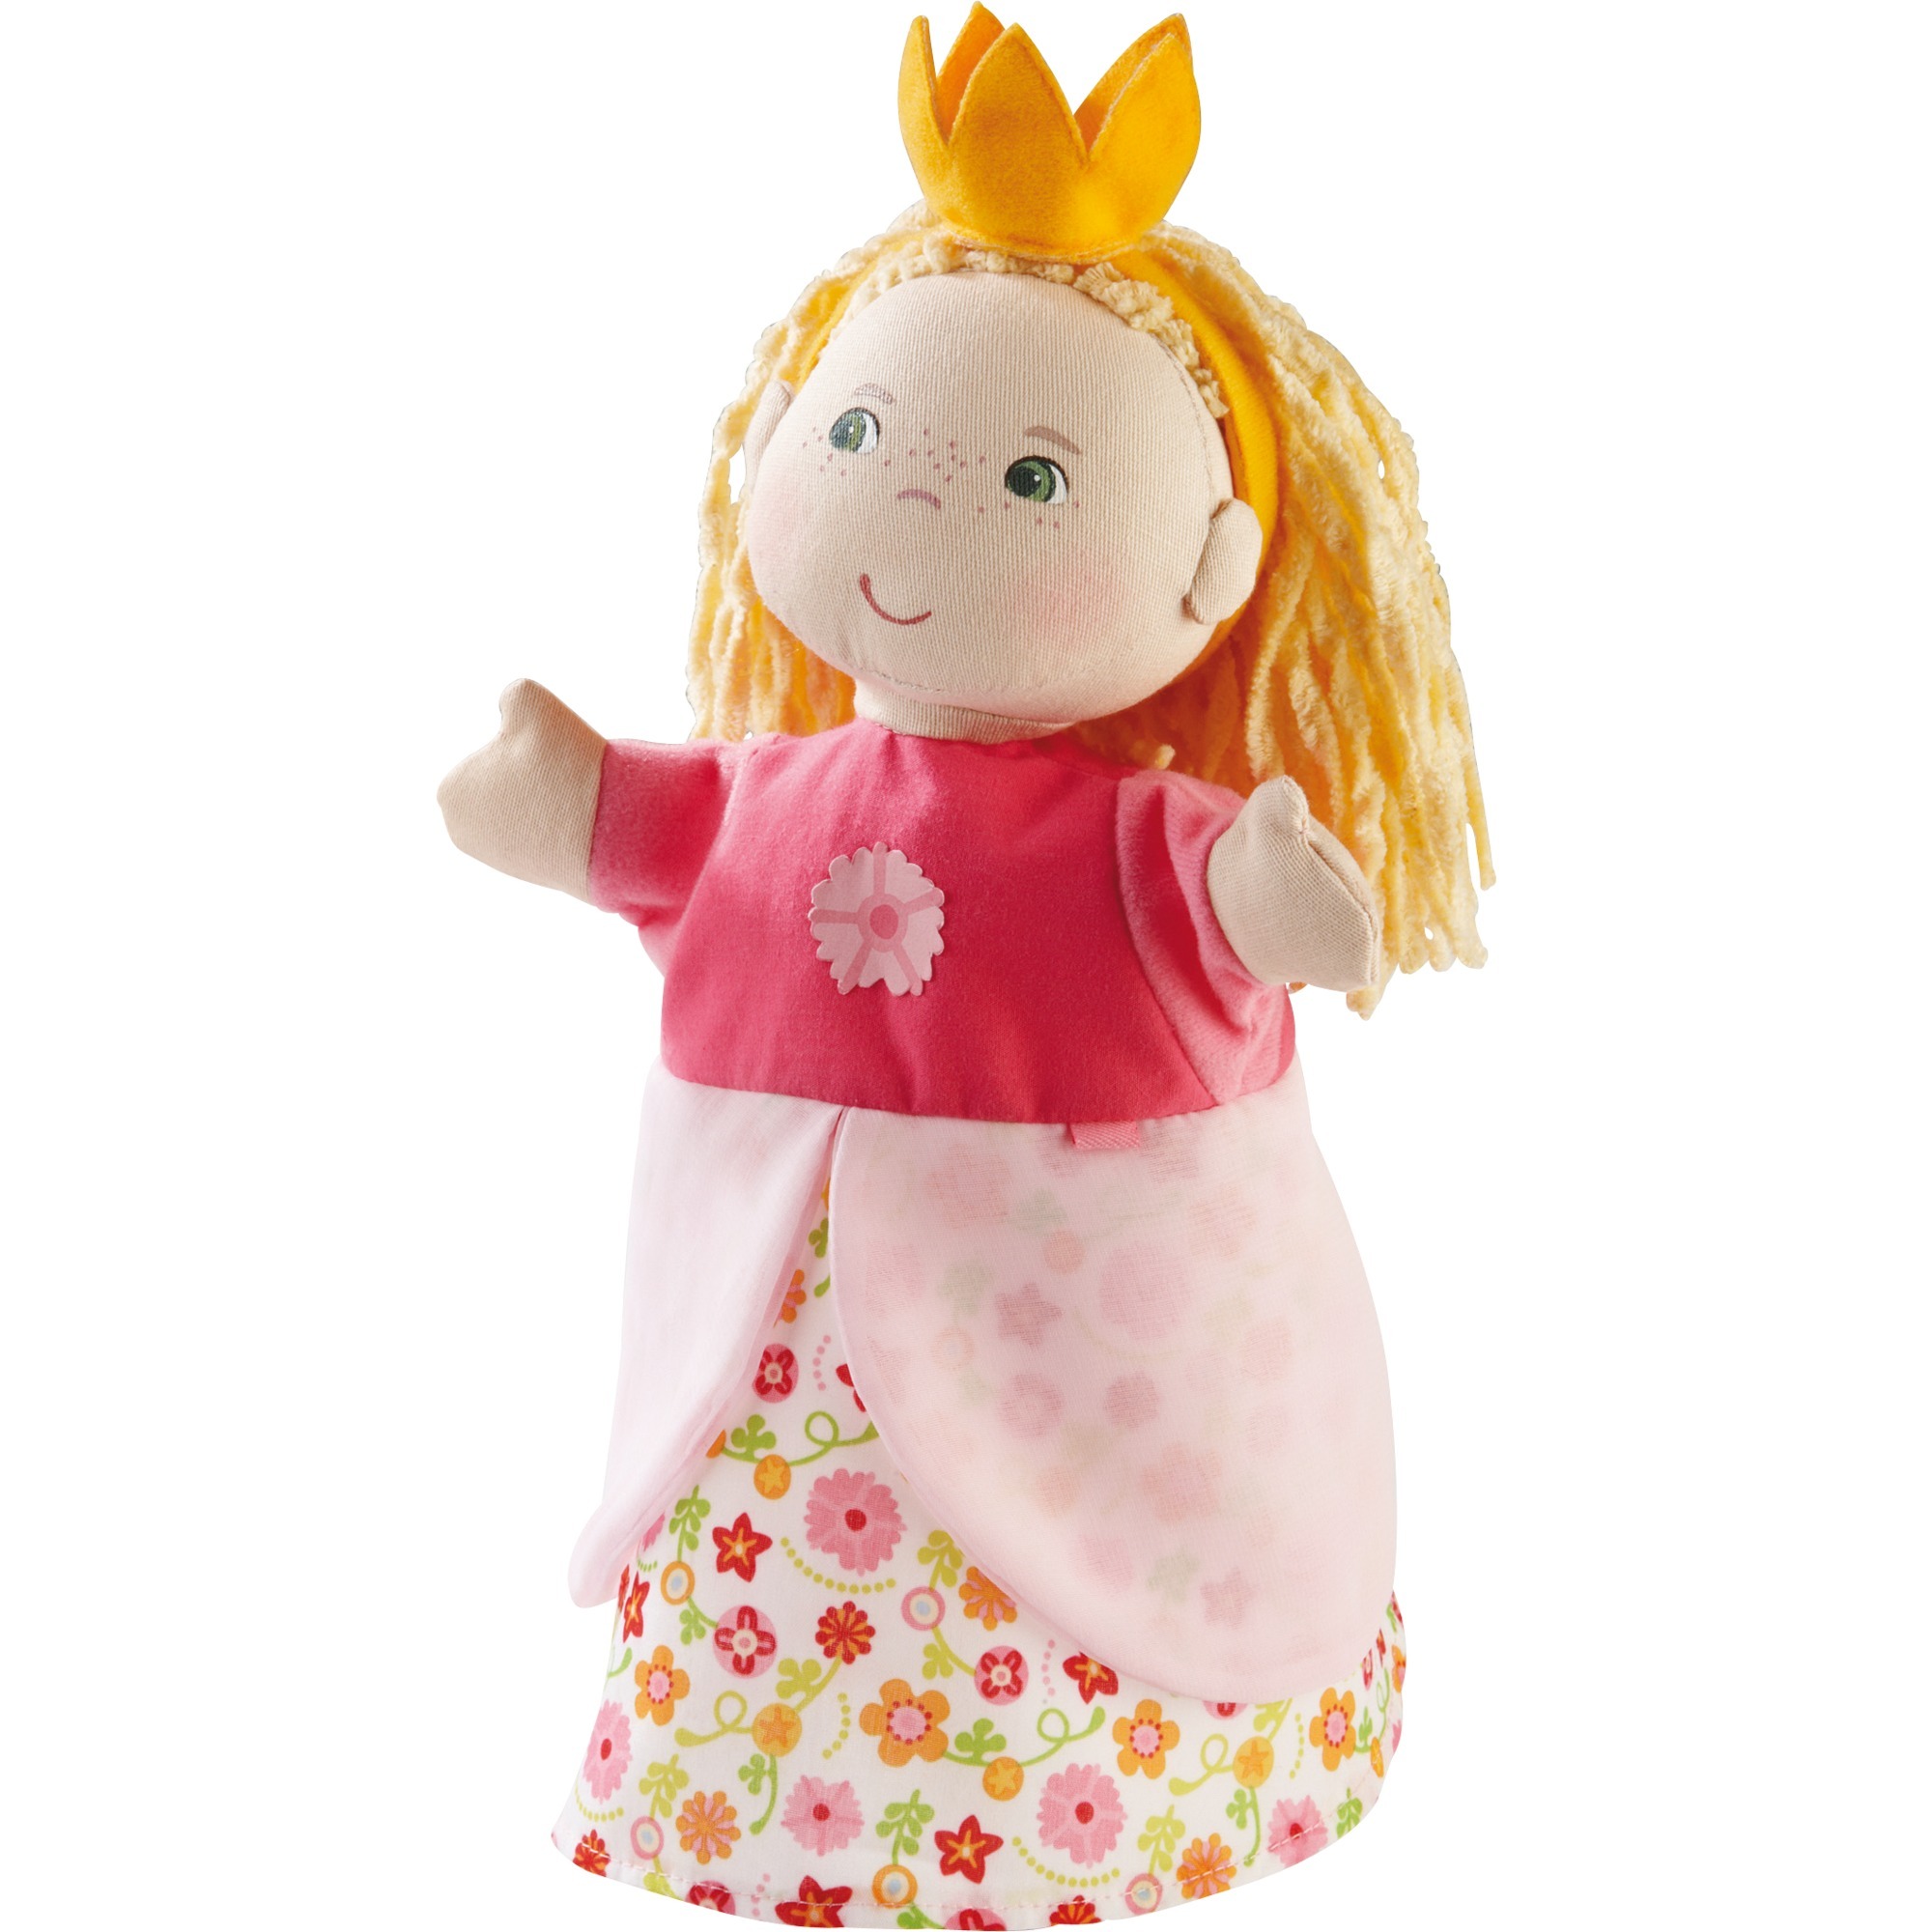 Image of Alternate - Handpuppe Prinzessin, Spielfigur online einkaufen bei Alternate